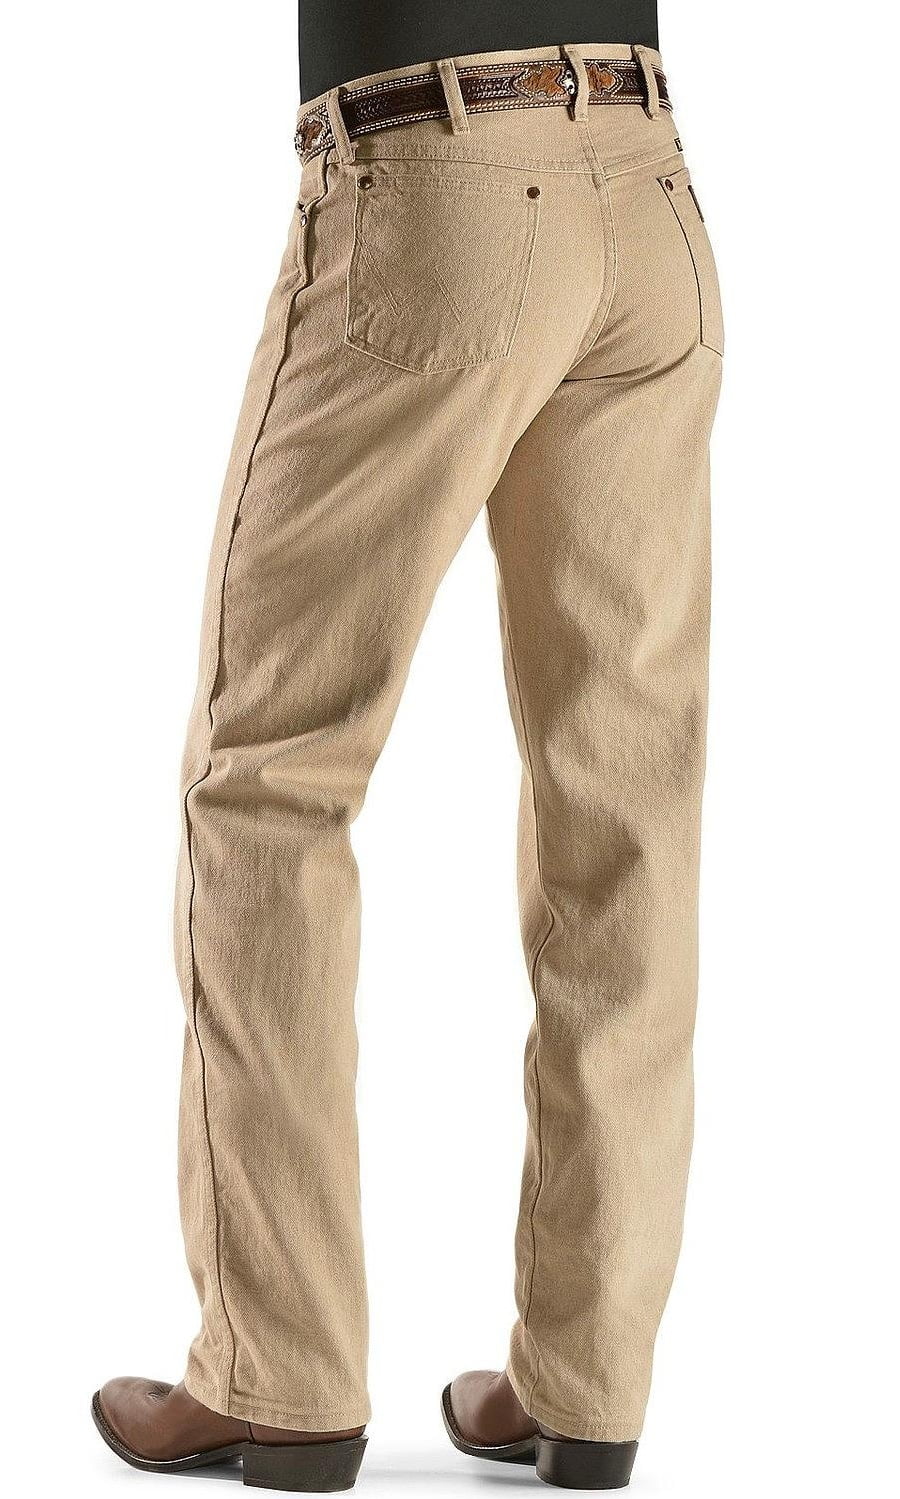 wrangler men's cowboy cut original fit jean, tan, 34x34 